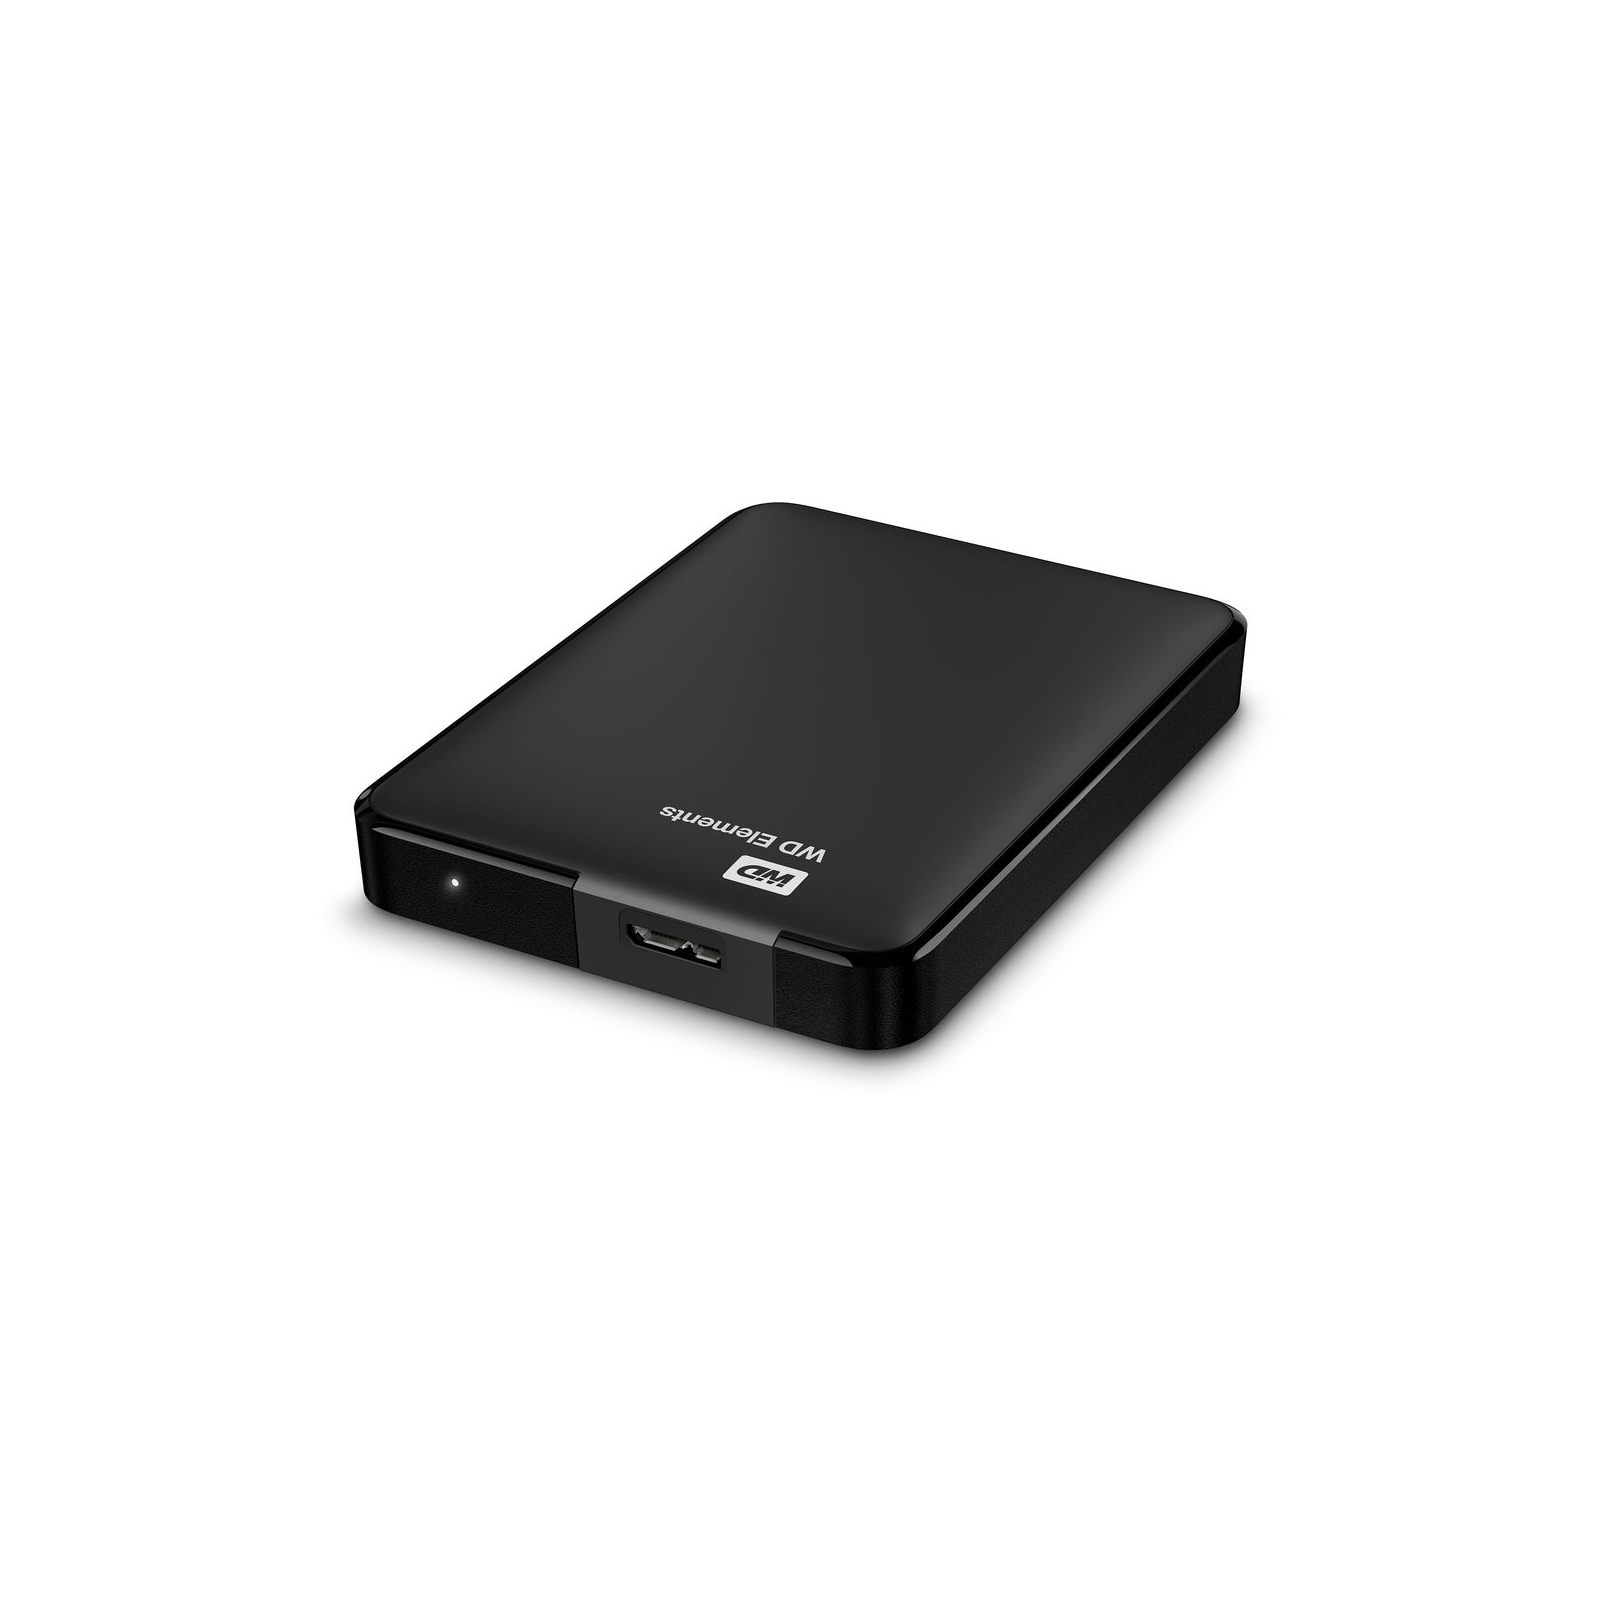 Зовнішній жорсткий диск 2.5" 750GB Elements Portable WD (WDBUZG7500ABK-WESN) зображення 5